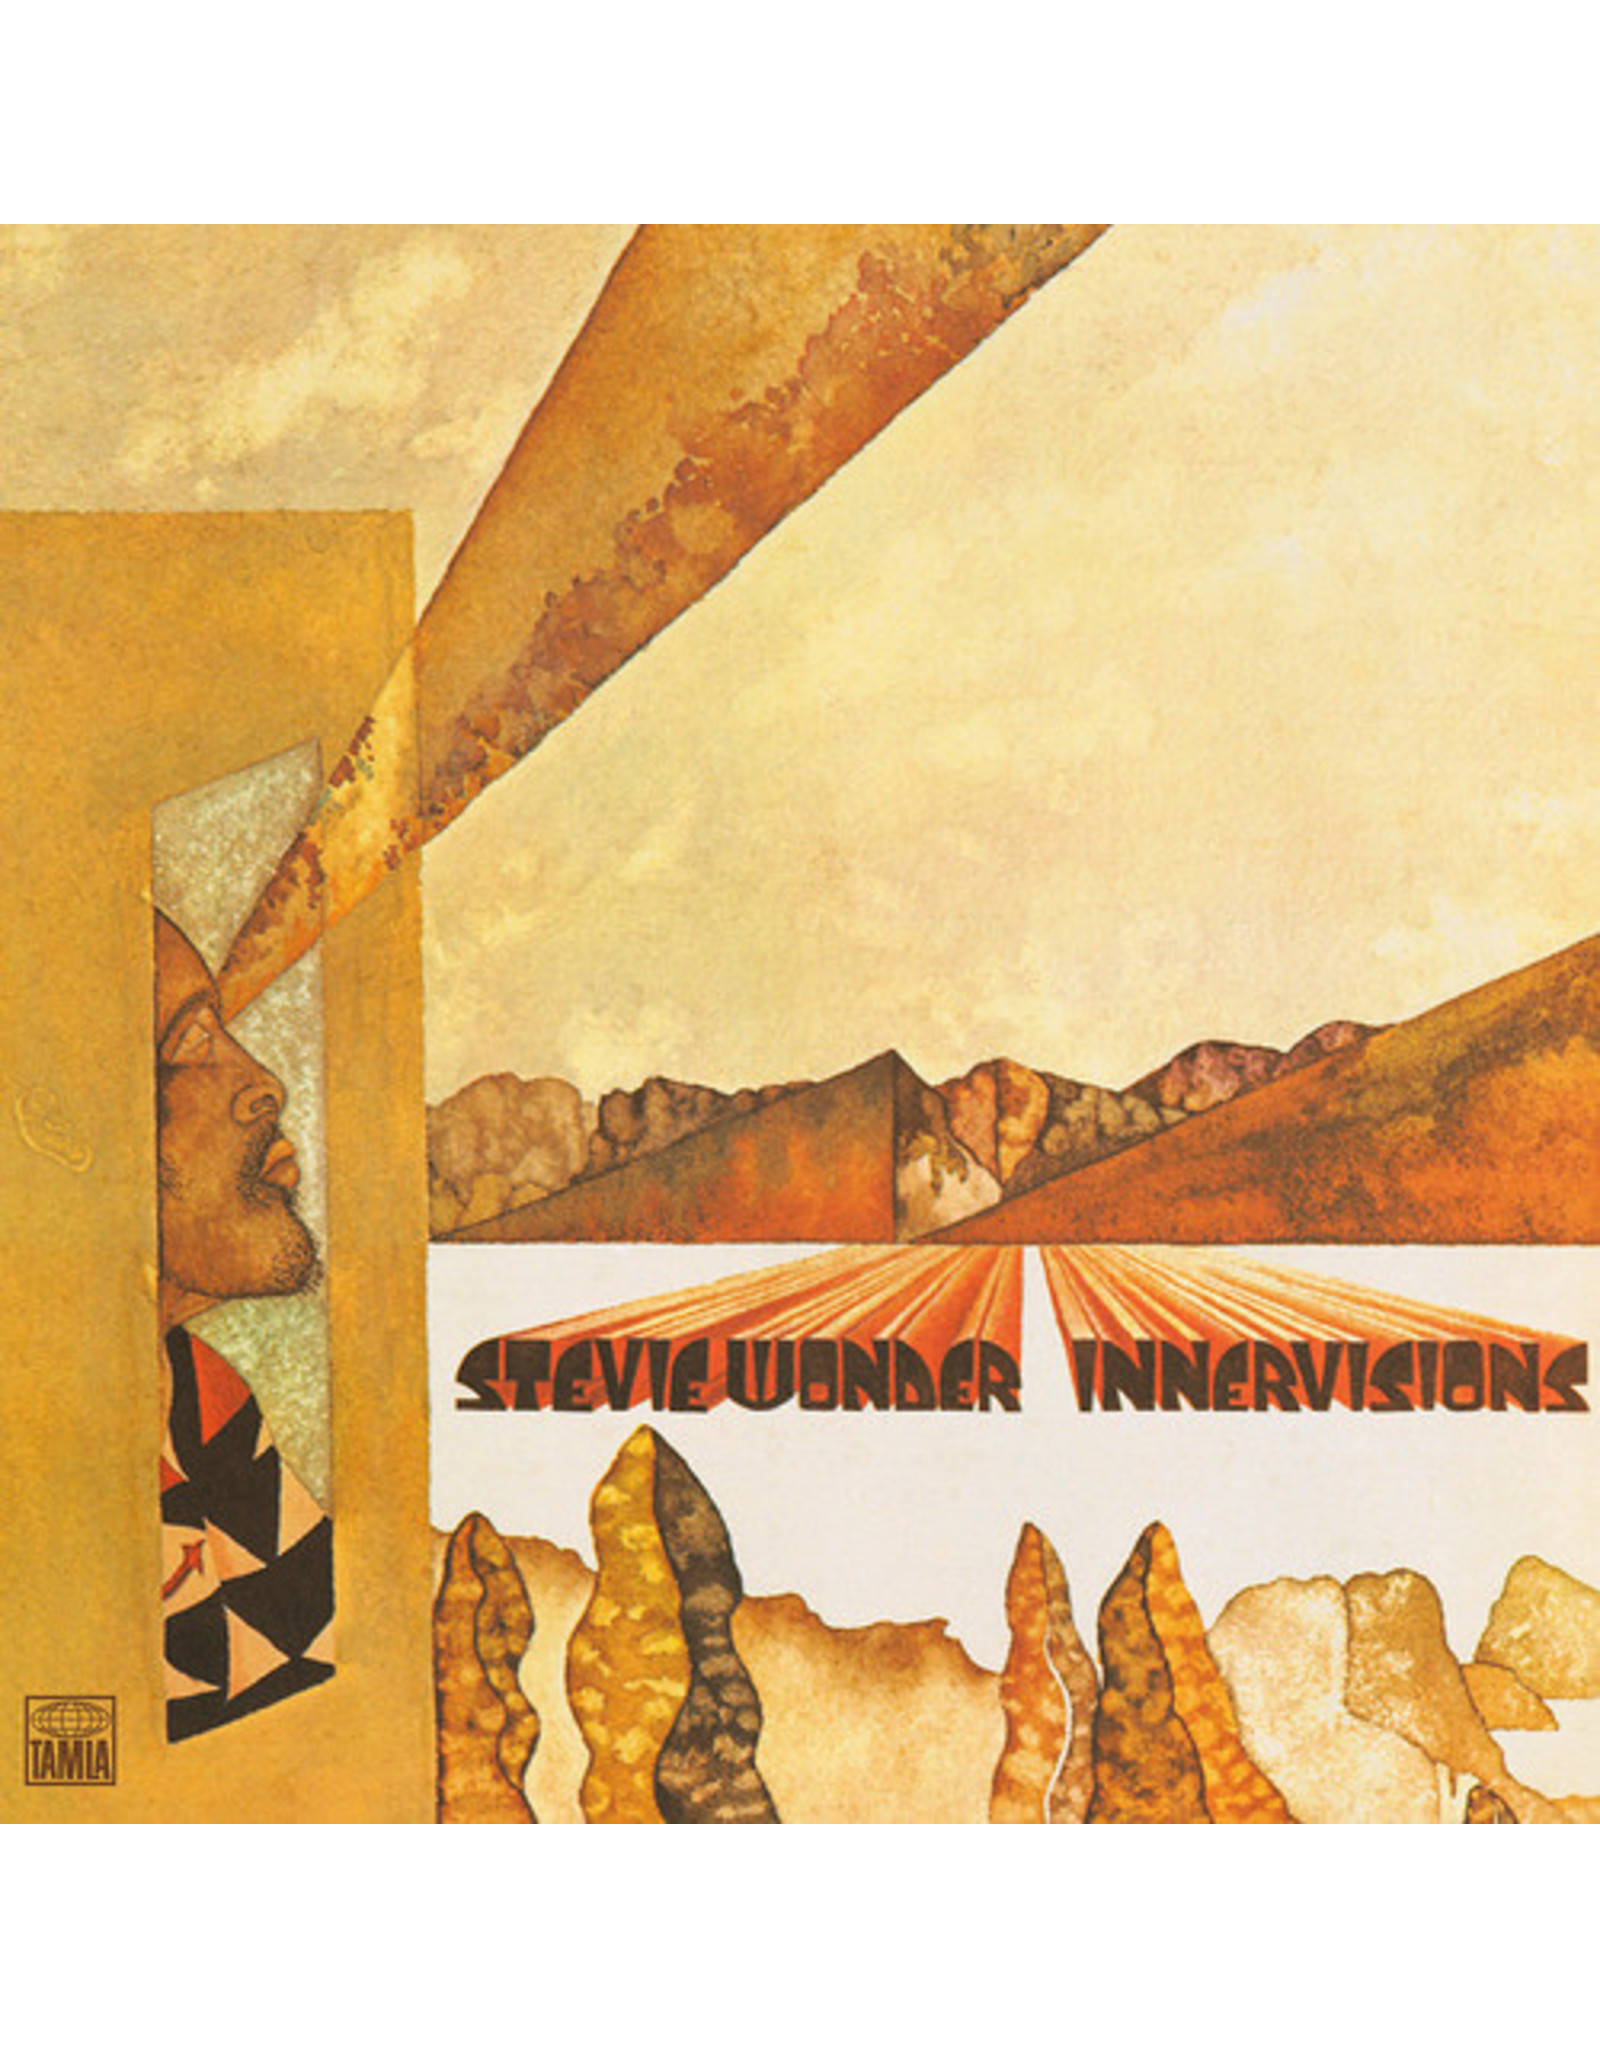 New Vinyl Stevie Wonder - Innervisions [UK Import] LP